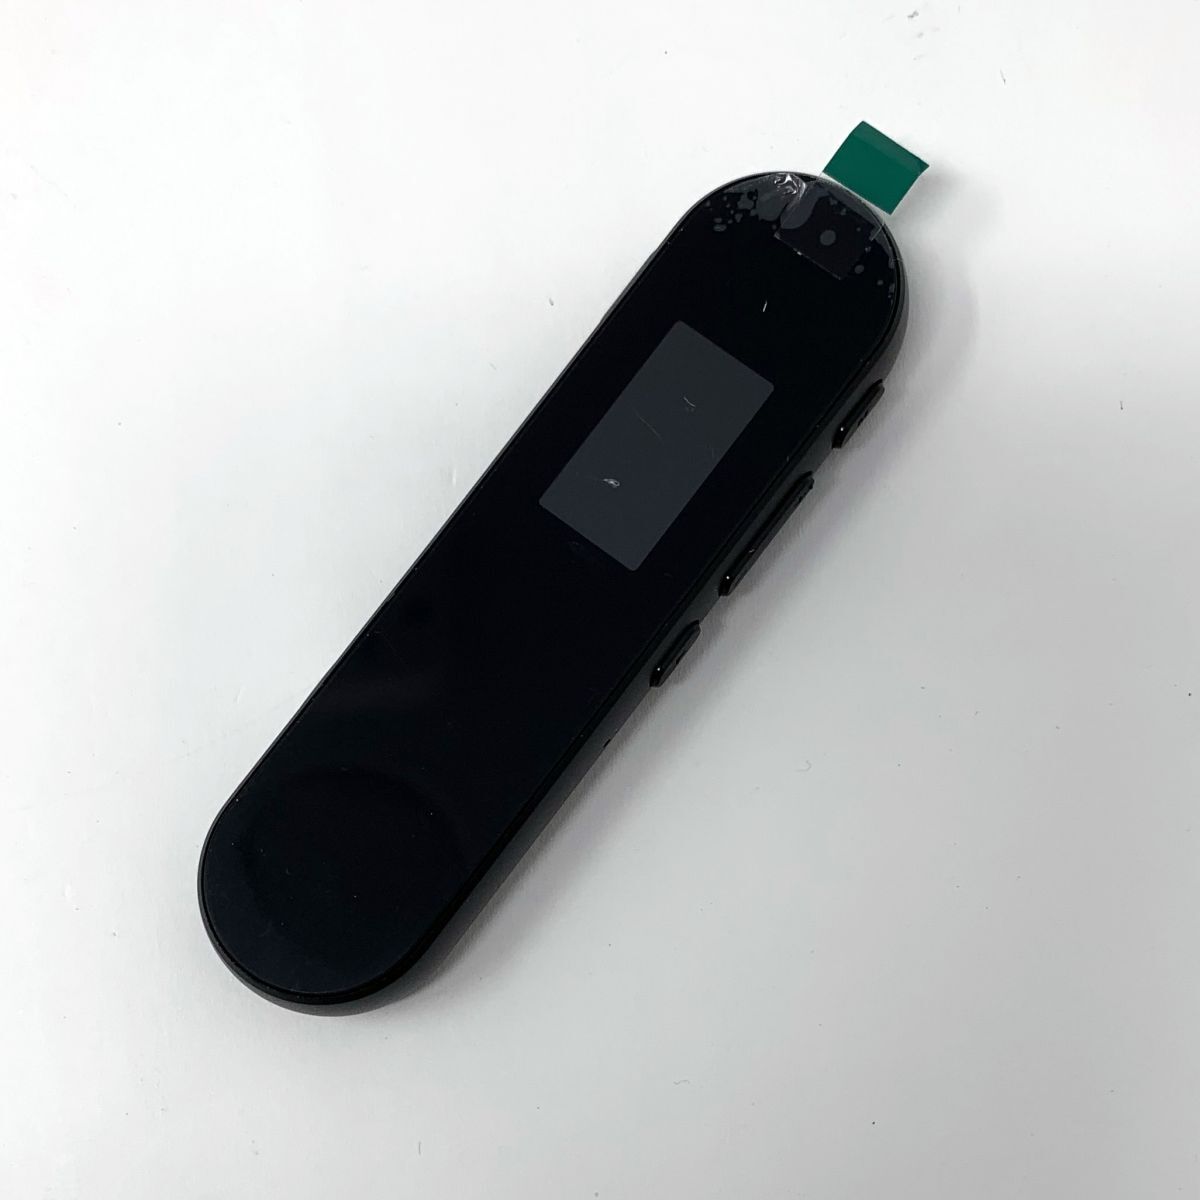 [ один иен старт ] цифровой диктофон магнитофон, цифровой аудио магнитофон .. собрание inter вид для 1 иен SEI01_1517